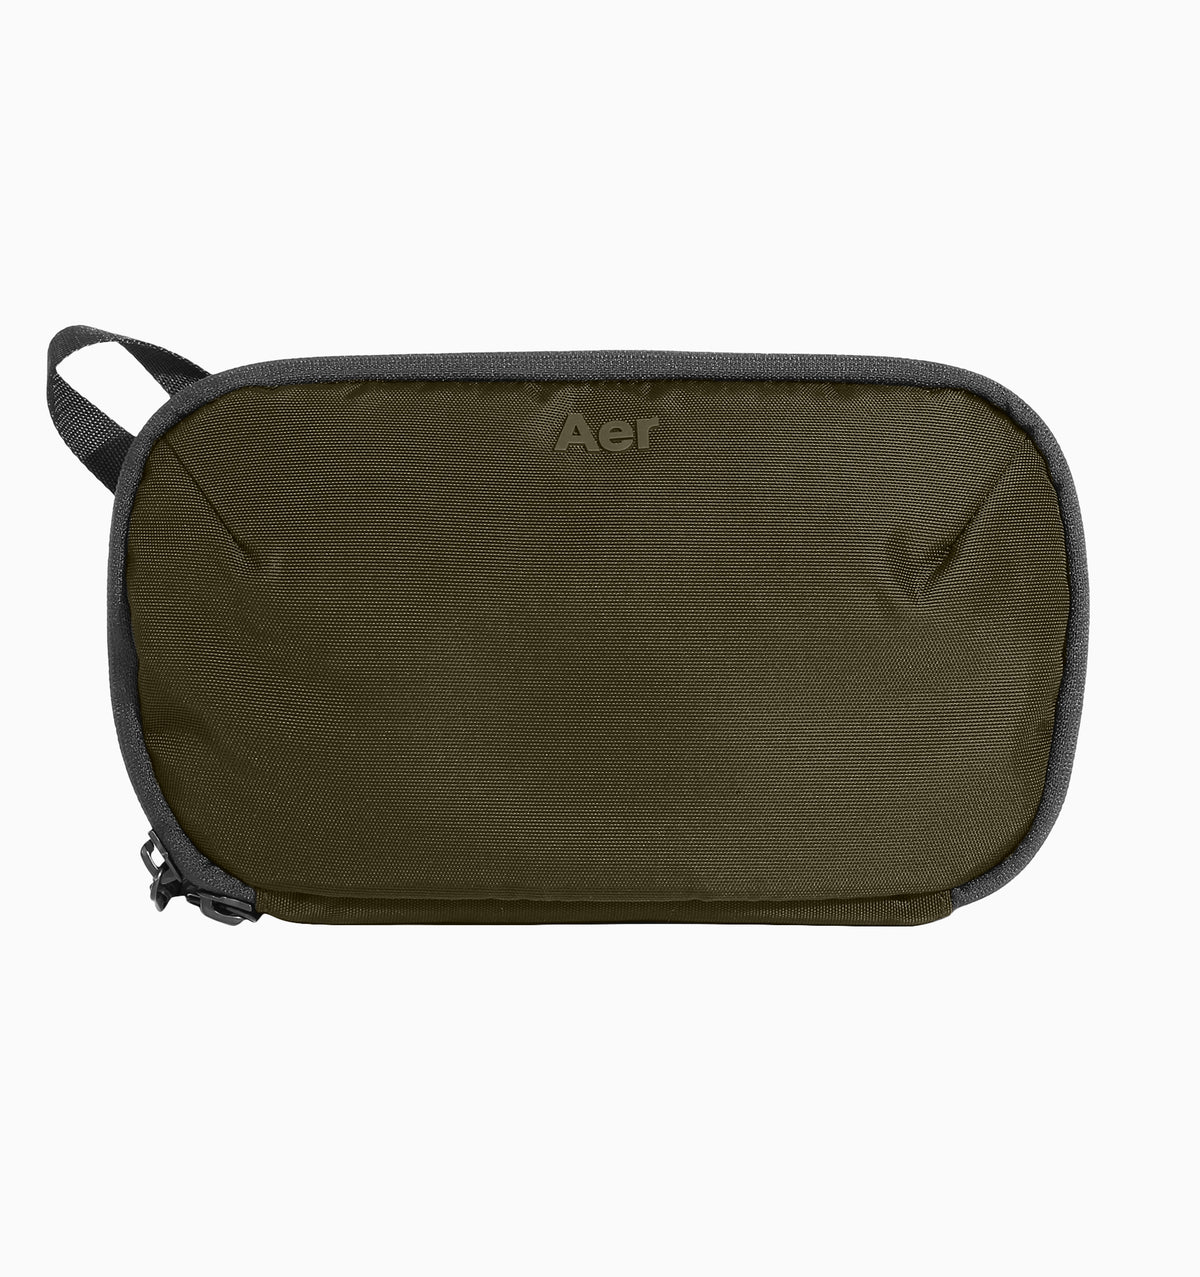 Aer Pro Kit 1.8L - Olive